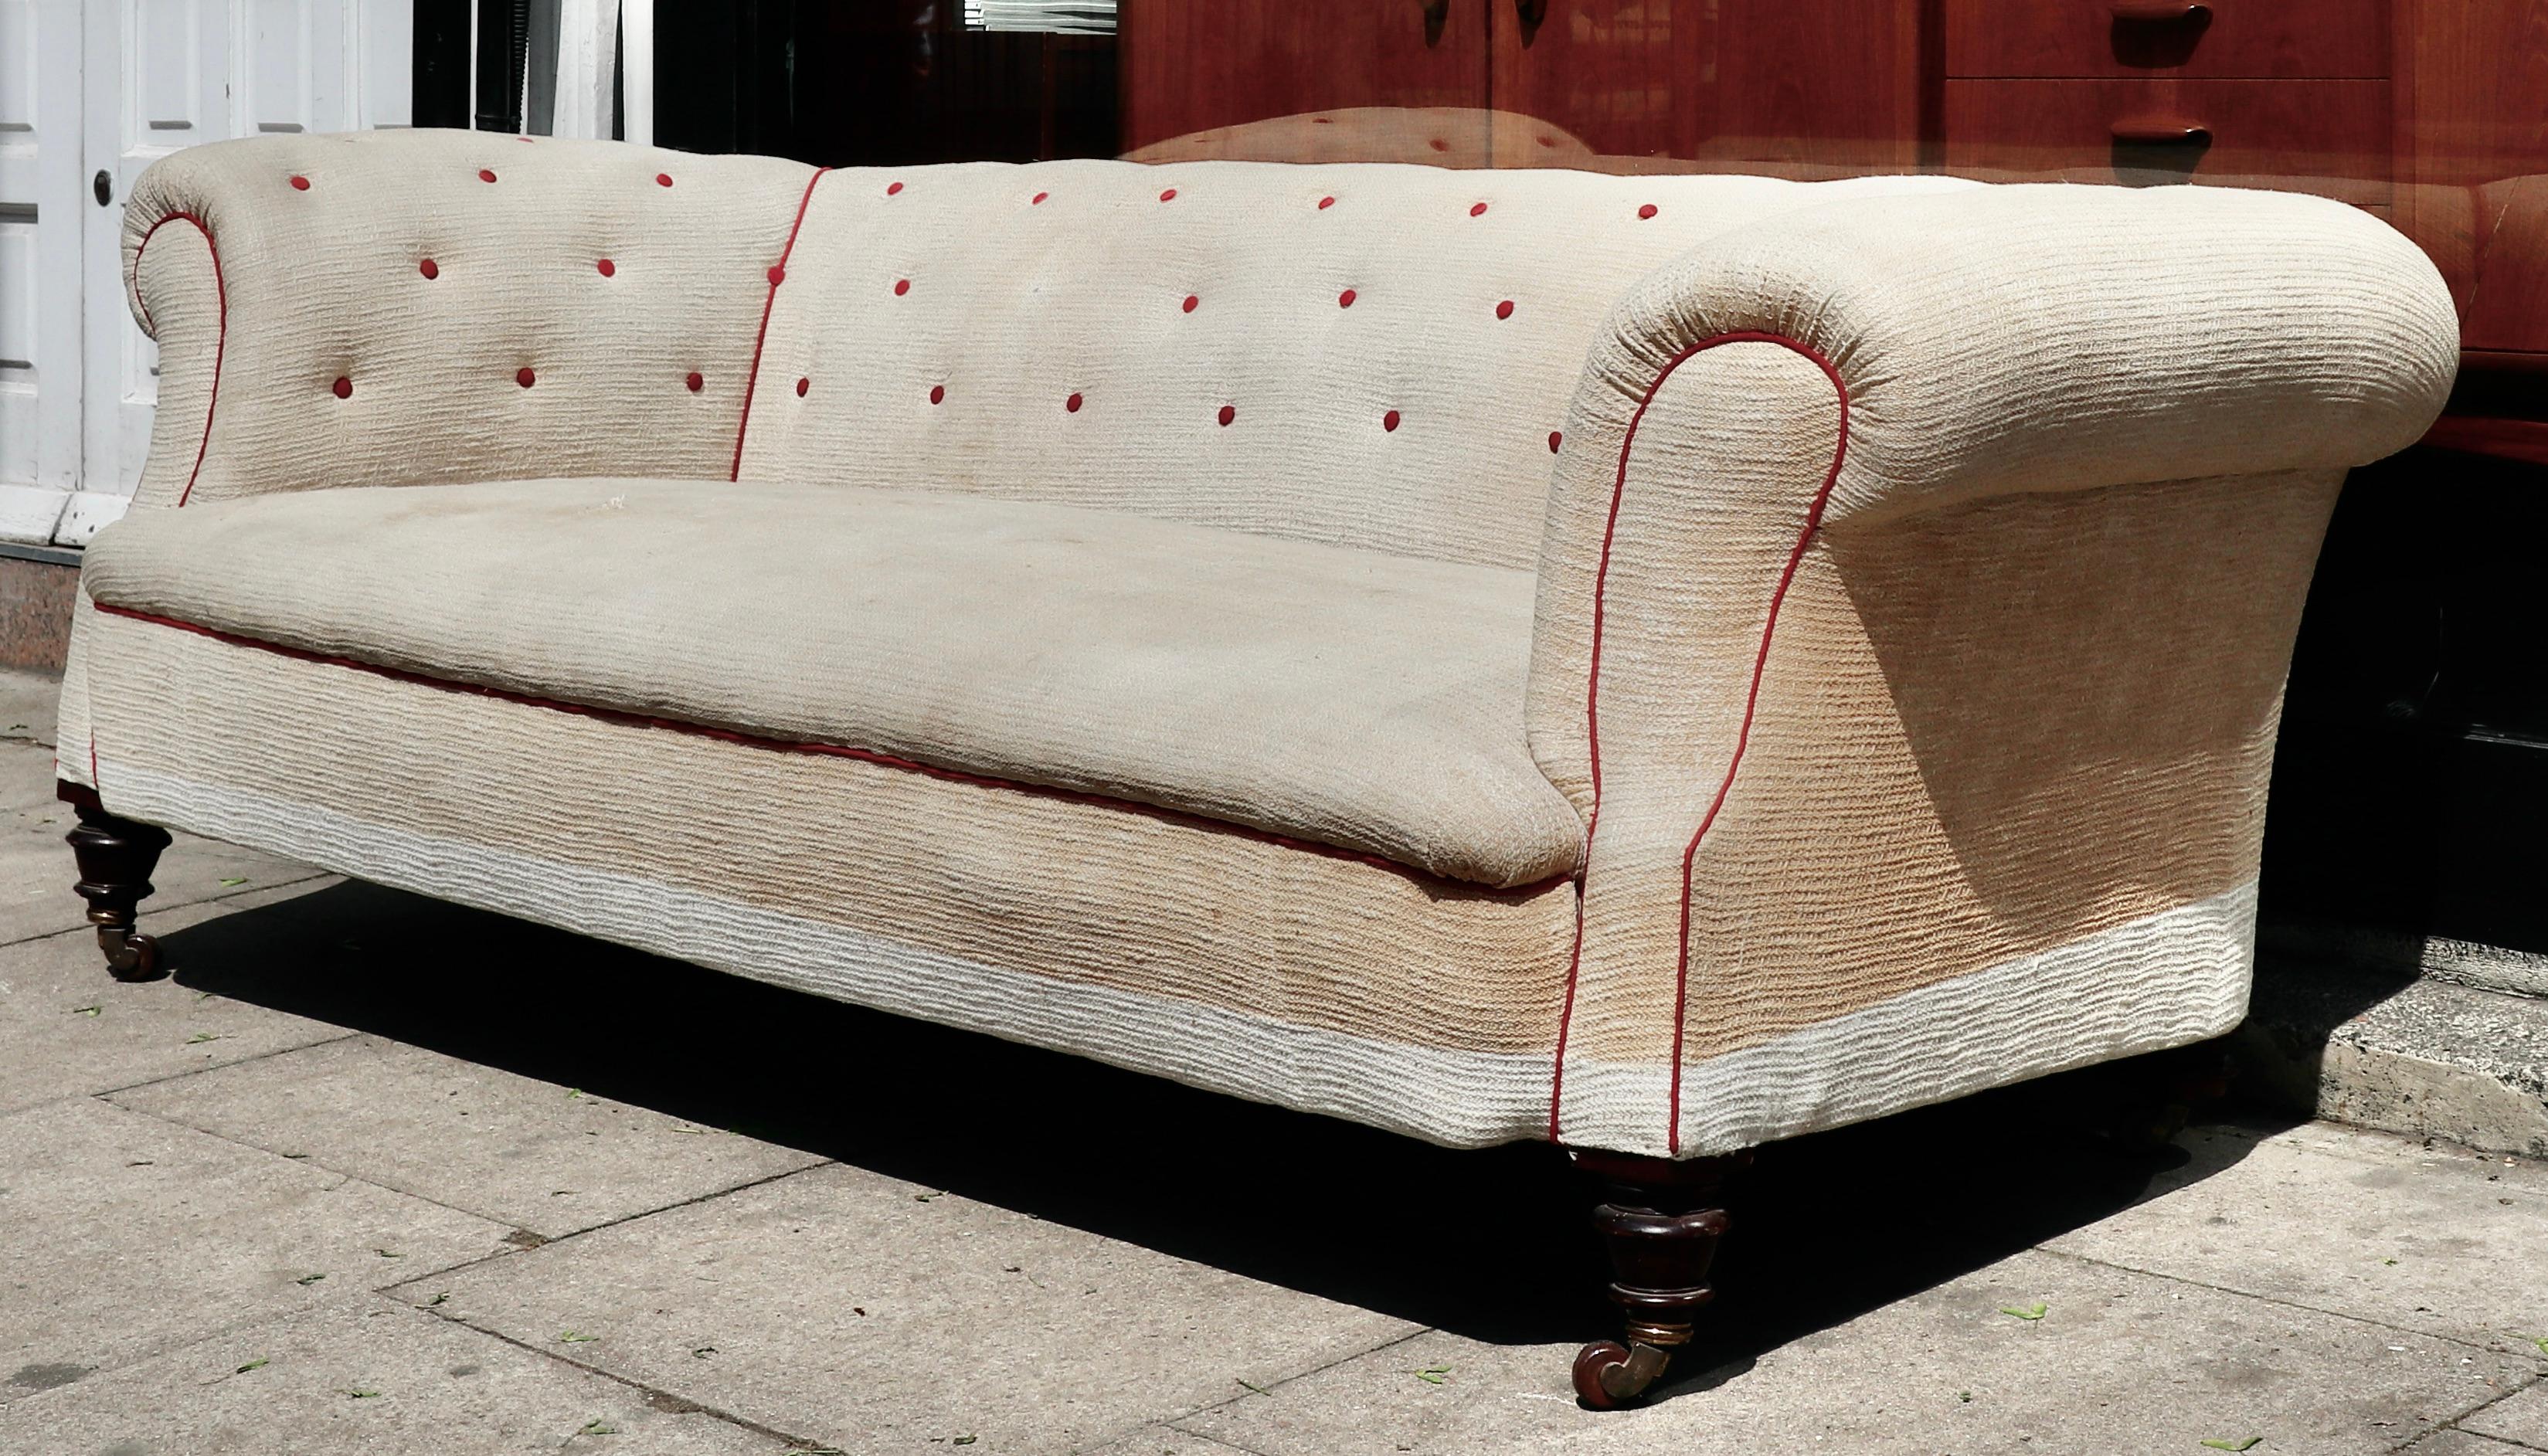 Dies ist eine hervorragende Qualität großen viktorianischen Chesterfield Sofa aus der Zeit um 1890.

Das Sofa muss neu gepolstert werden, da der Stoff verfärbt und abgenutzt ist. Die Vorderbeine sind intakt, aber die Hinterbeine wurden